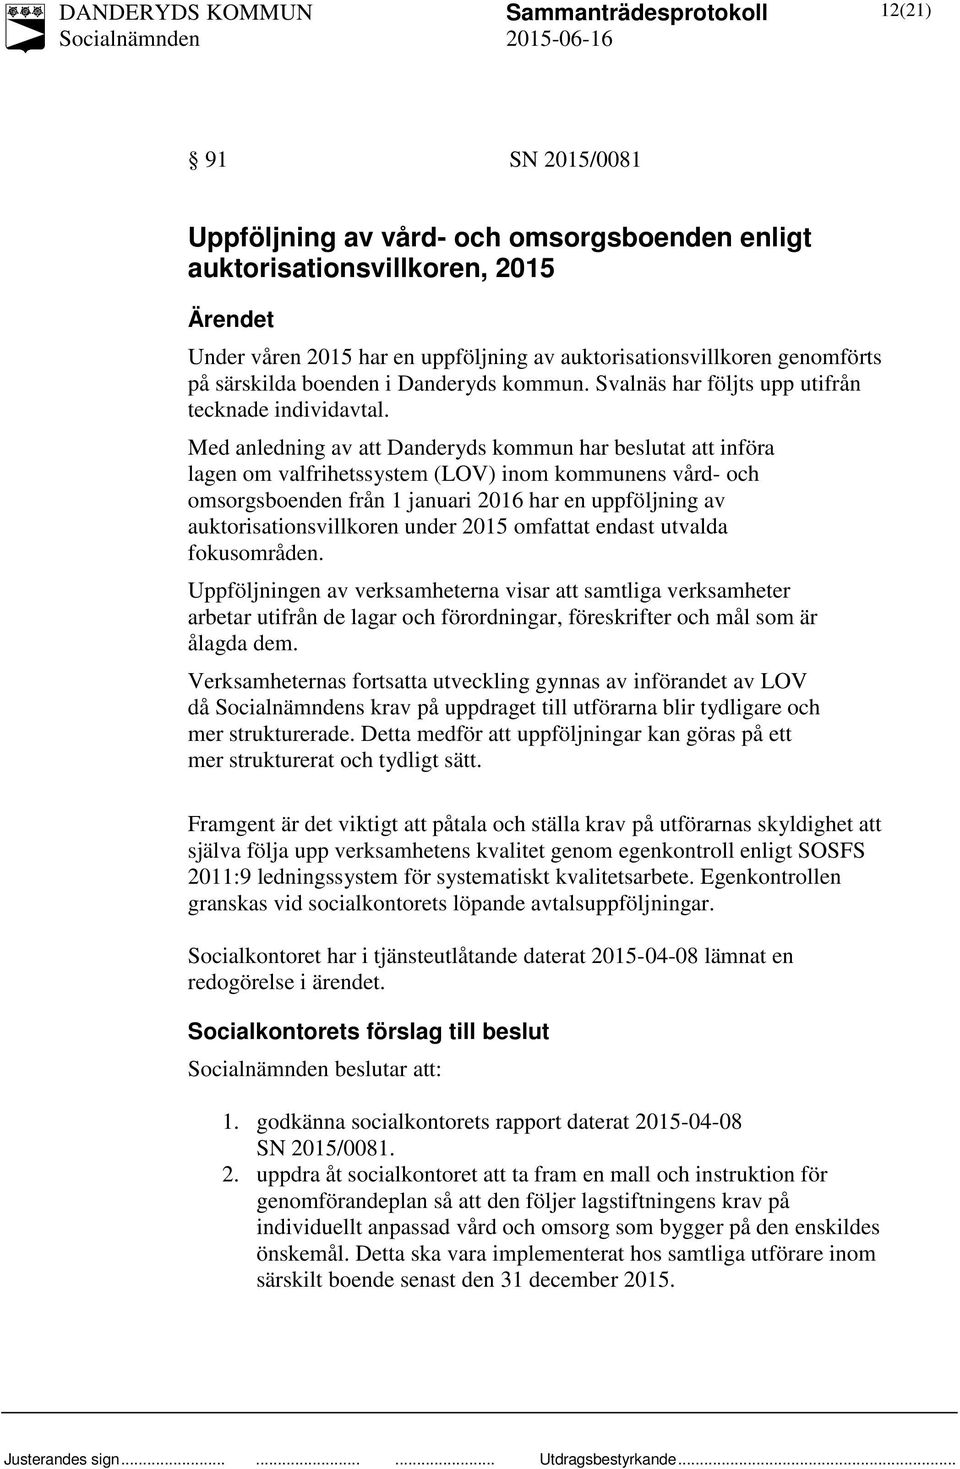 Med anledning av att Danderyds kommun har beslutat att införa lagen om valfrihetssystem (LOV) inom kommunens vård- och omsorgsboenden från 1 januari 2016 har en uppföljning av auktorisationsvillkoren